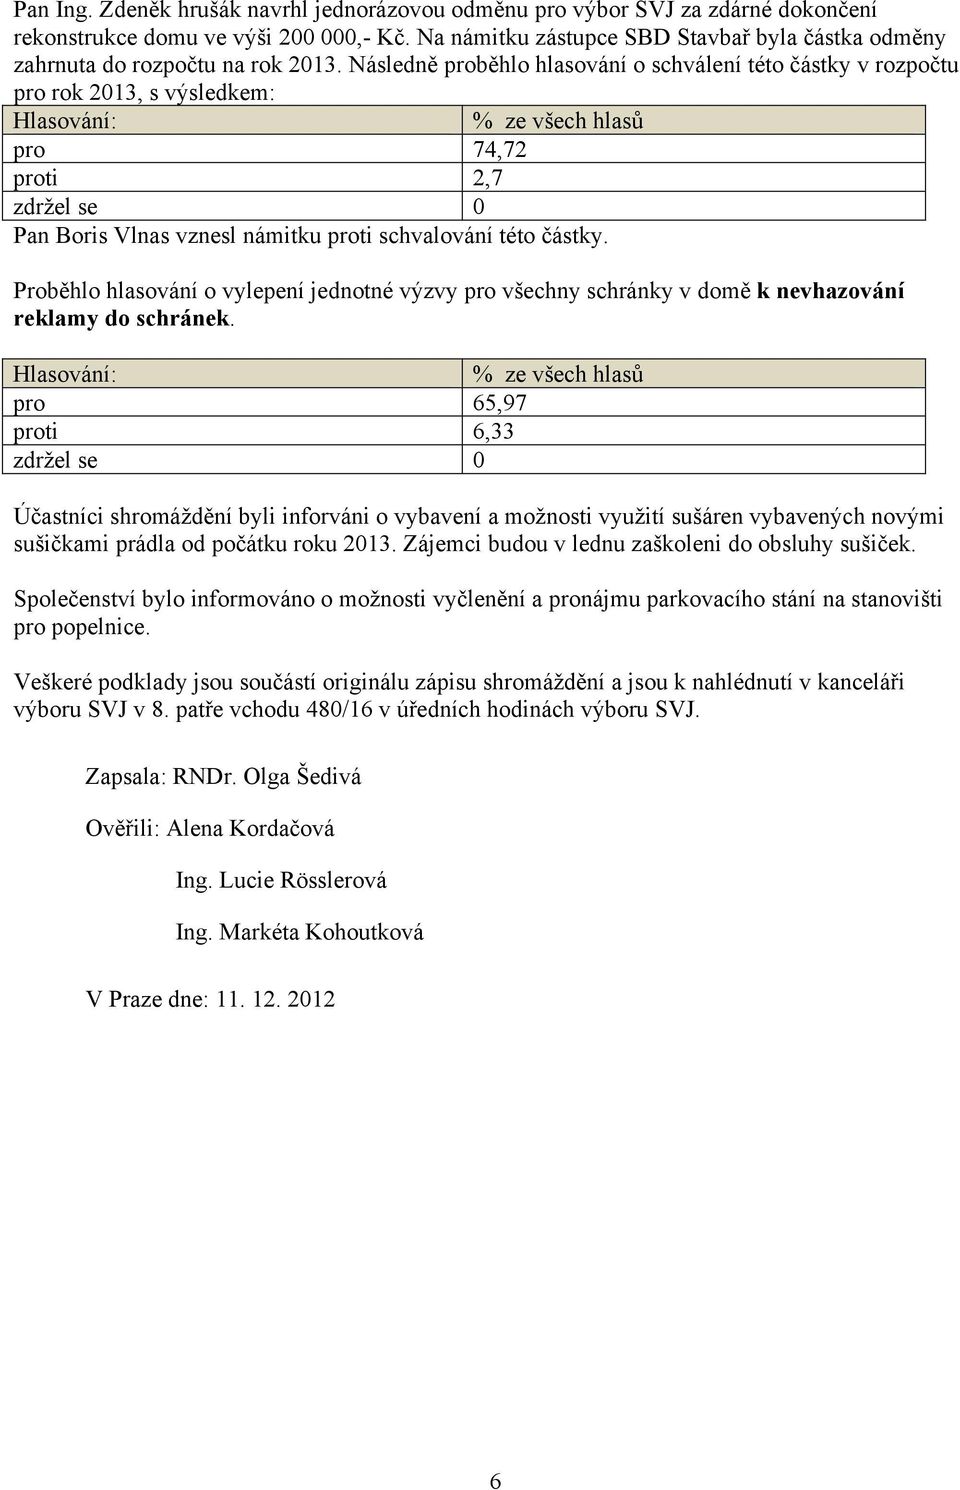 Následně proběhlo hlasování o schválení této částky v rozpočtu pro rok 2013, s výsledkem: pro 74,72 proti 2,7 Pan Boris Vlnas vznesl námitku proti schvalování této částky.